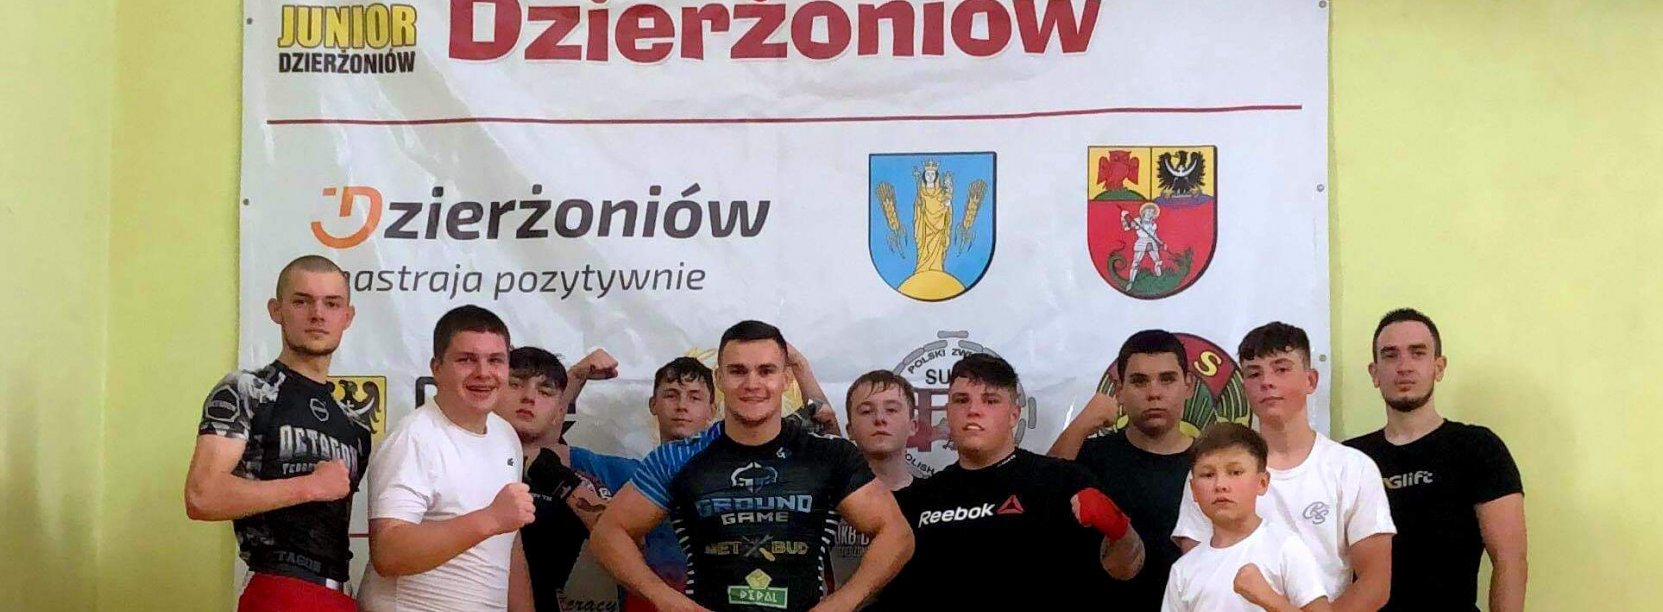 MULKS Junior Dzierżoniów ma za sobą udany sezon